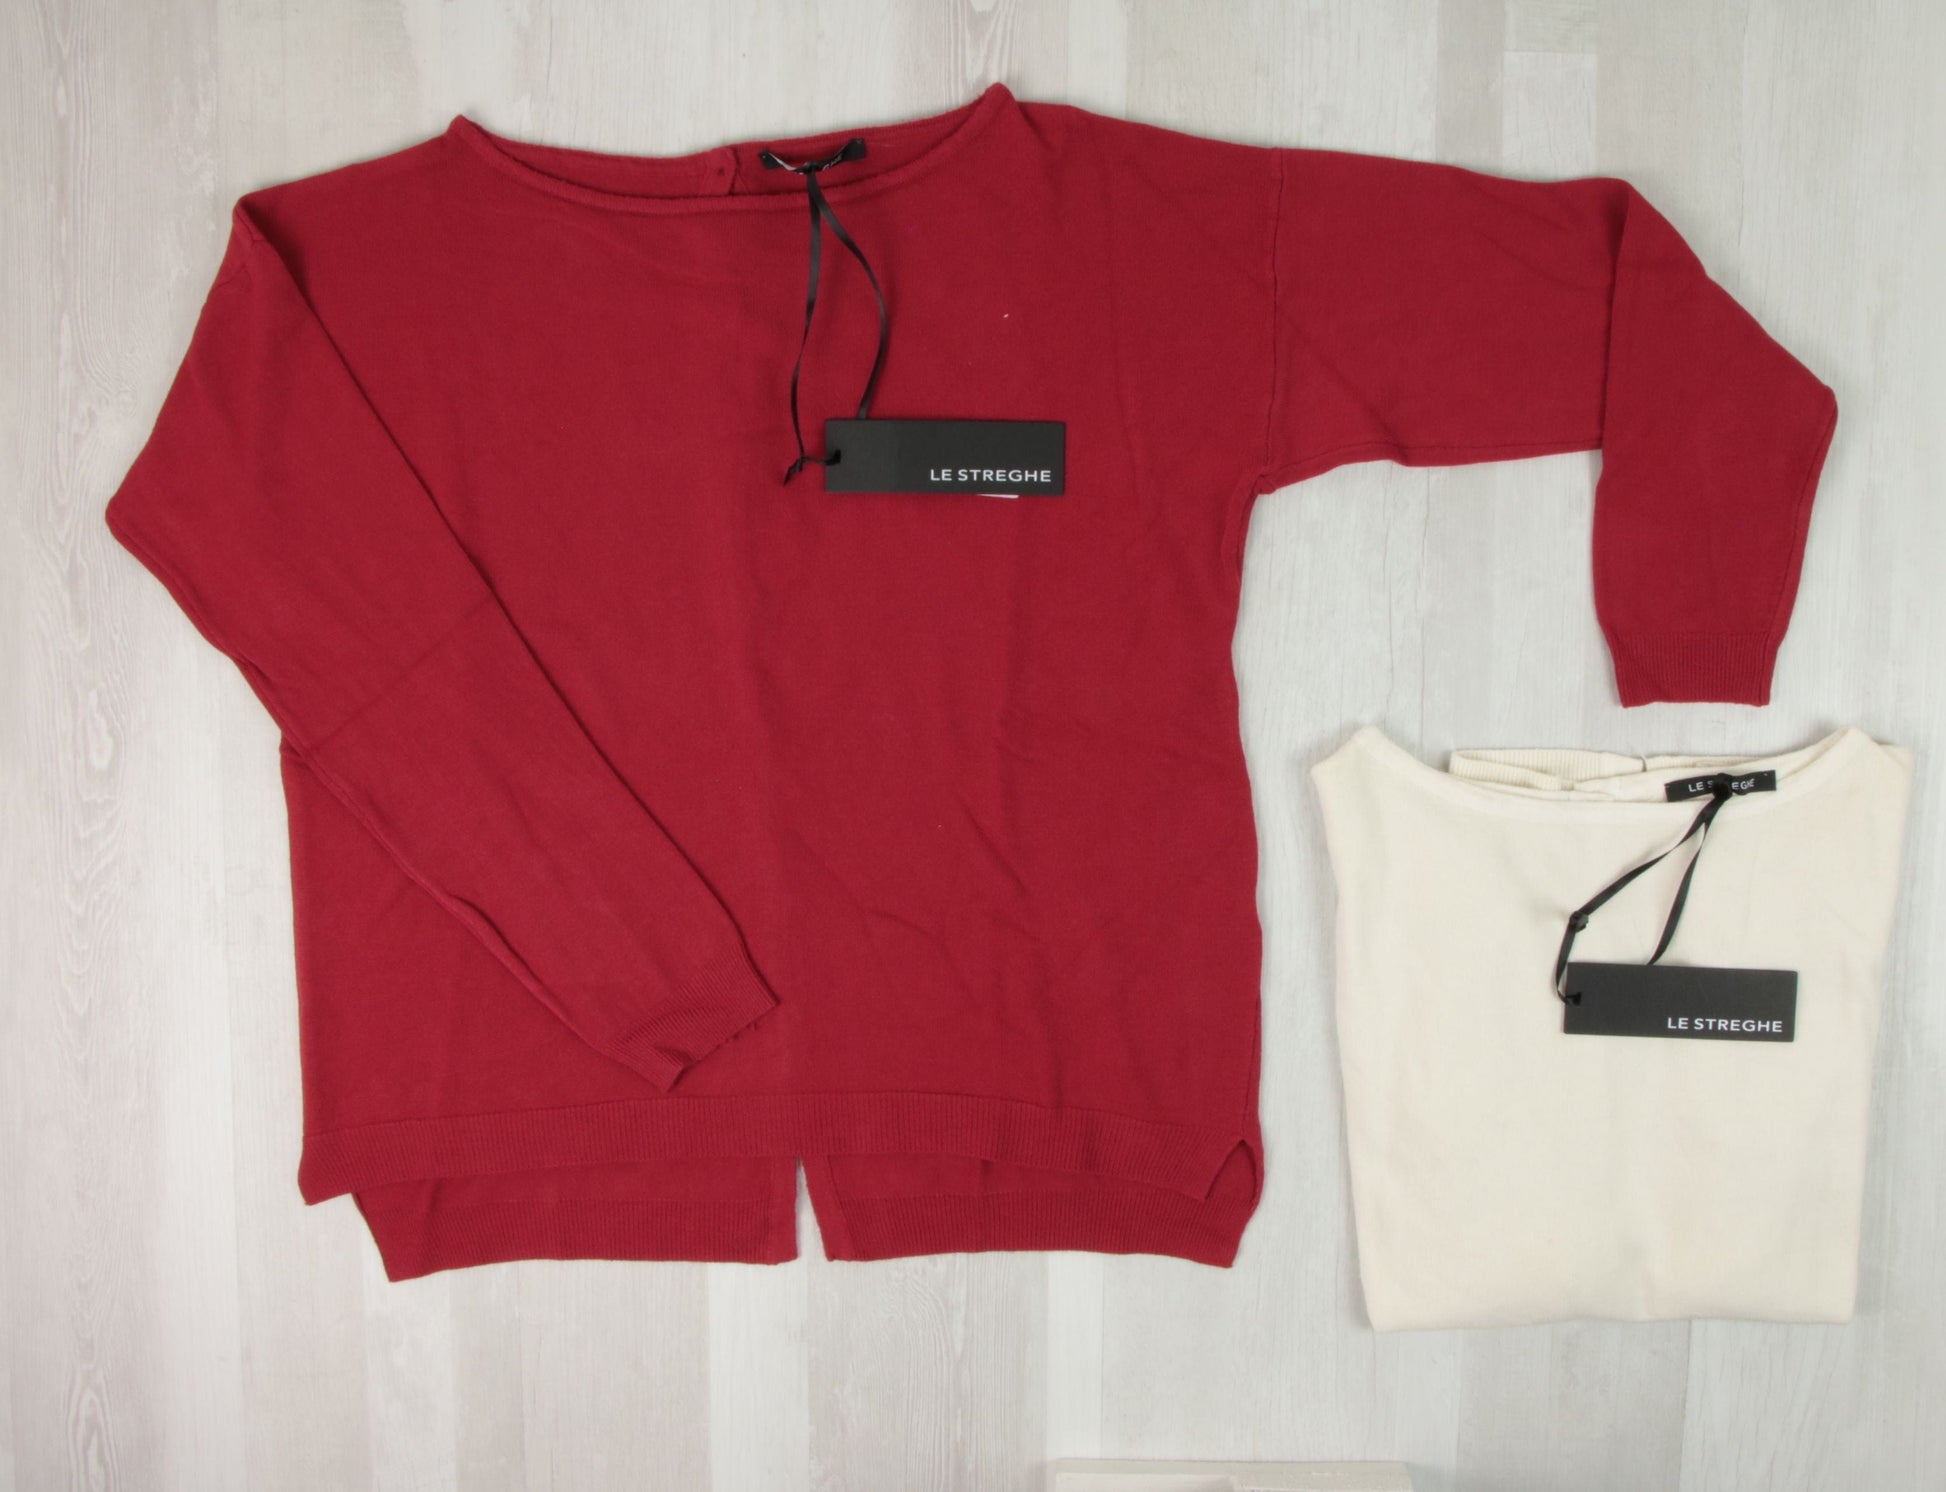 stock abbigliamento donna - €16,48 al pezzo POLO RALPH LAUREN, DKNY, ANIYE BY, NOPE, LE STREGHE ecc. 42 pezzi da donna - A/I - RIF. 3904